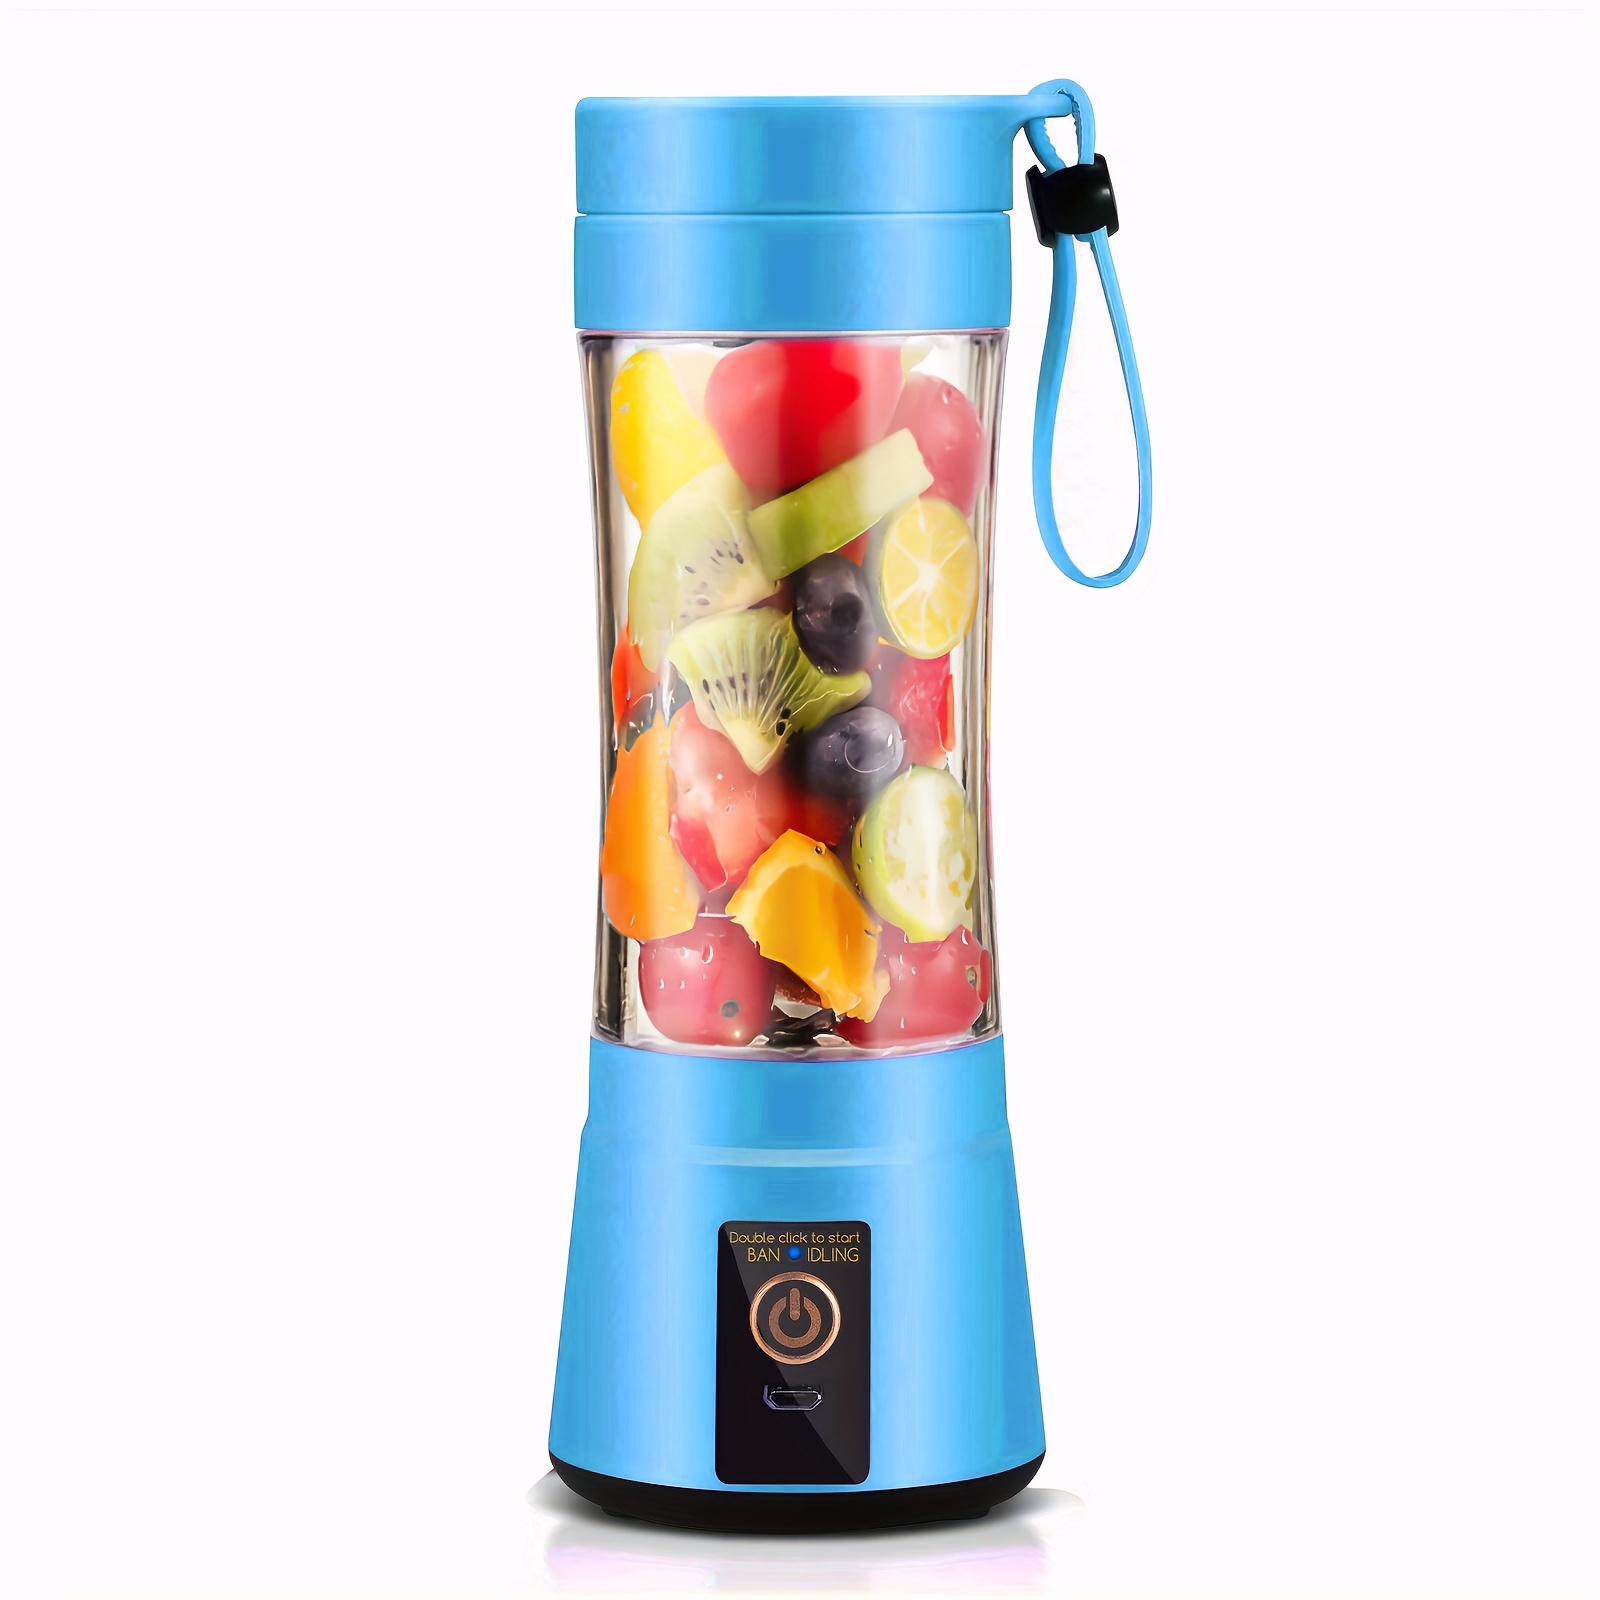  Portable Juicer Blender,Household USB Rechargeable Electric Fruit  Vegetable Extractor Juice Blender - Blue: Home & Kitchen